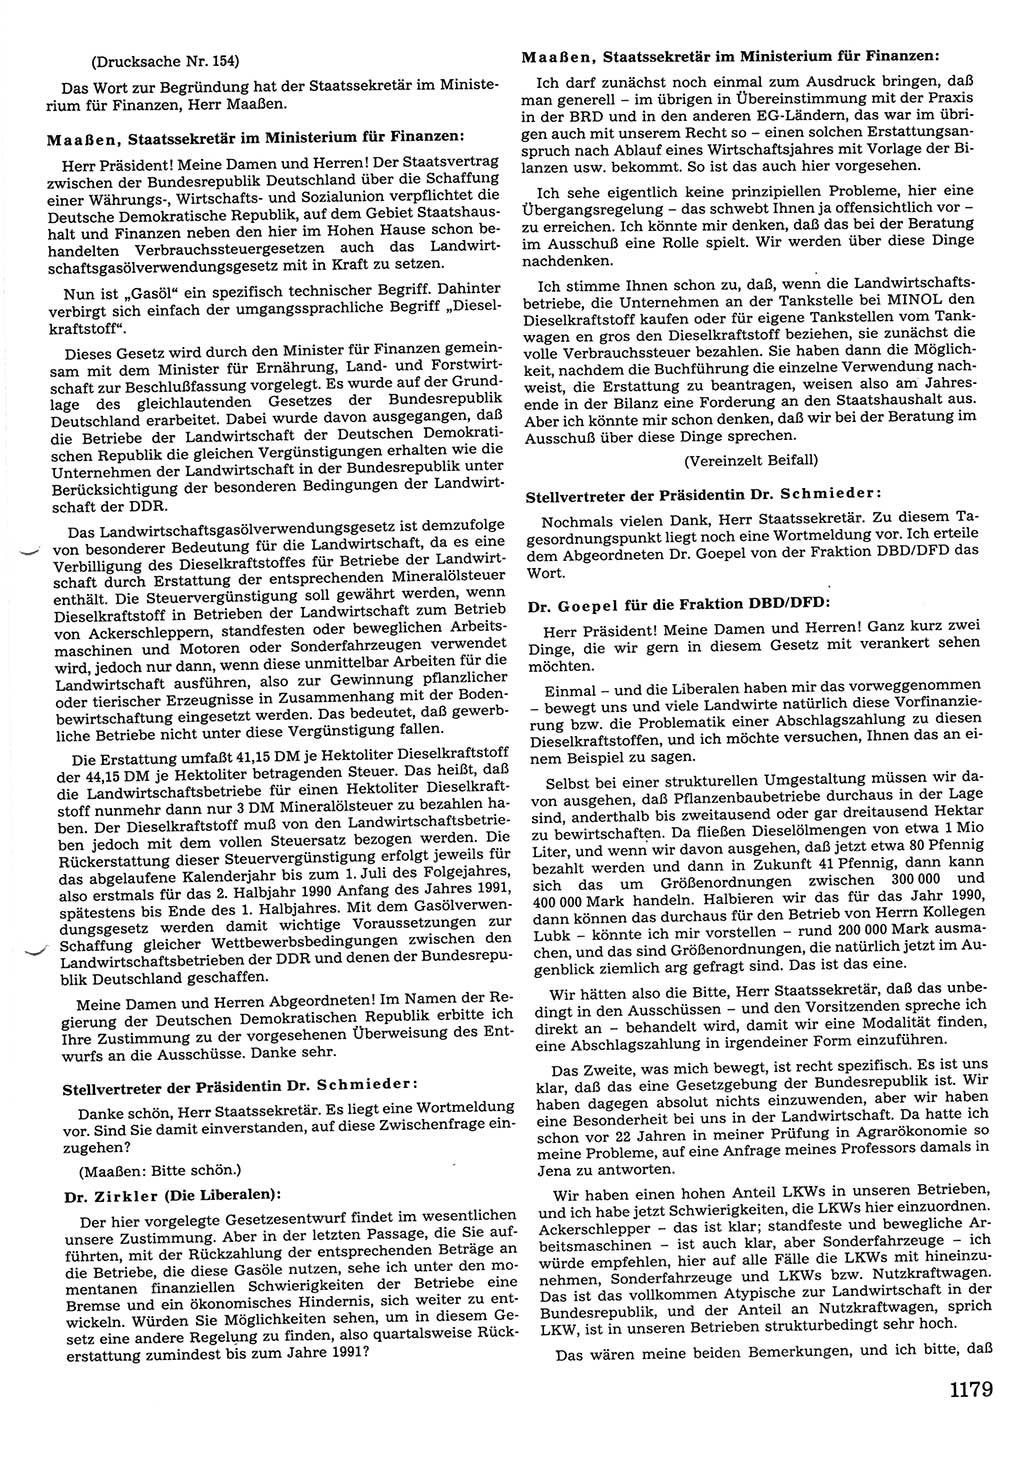 Tagungen der Volkskammer (VK) der Deutschen Demokratischen Republik (DDR), 10. Wahlperiode 1990, Seite 1179 (VK. DDR 10. WP. 1990, Prot. Tg. 1-38, 5.4.-2.10.1990, S. 1179)